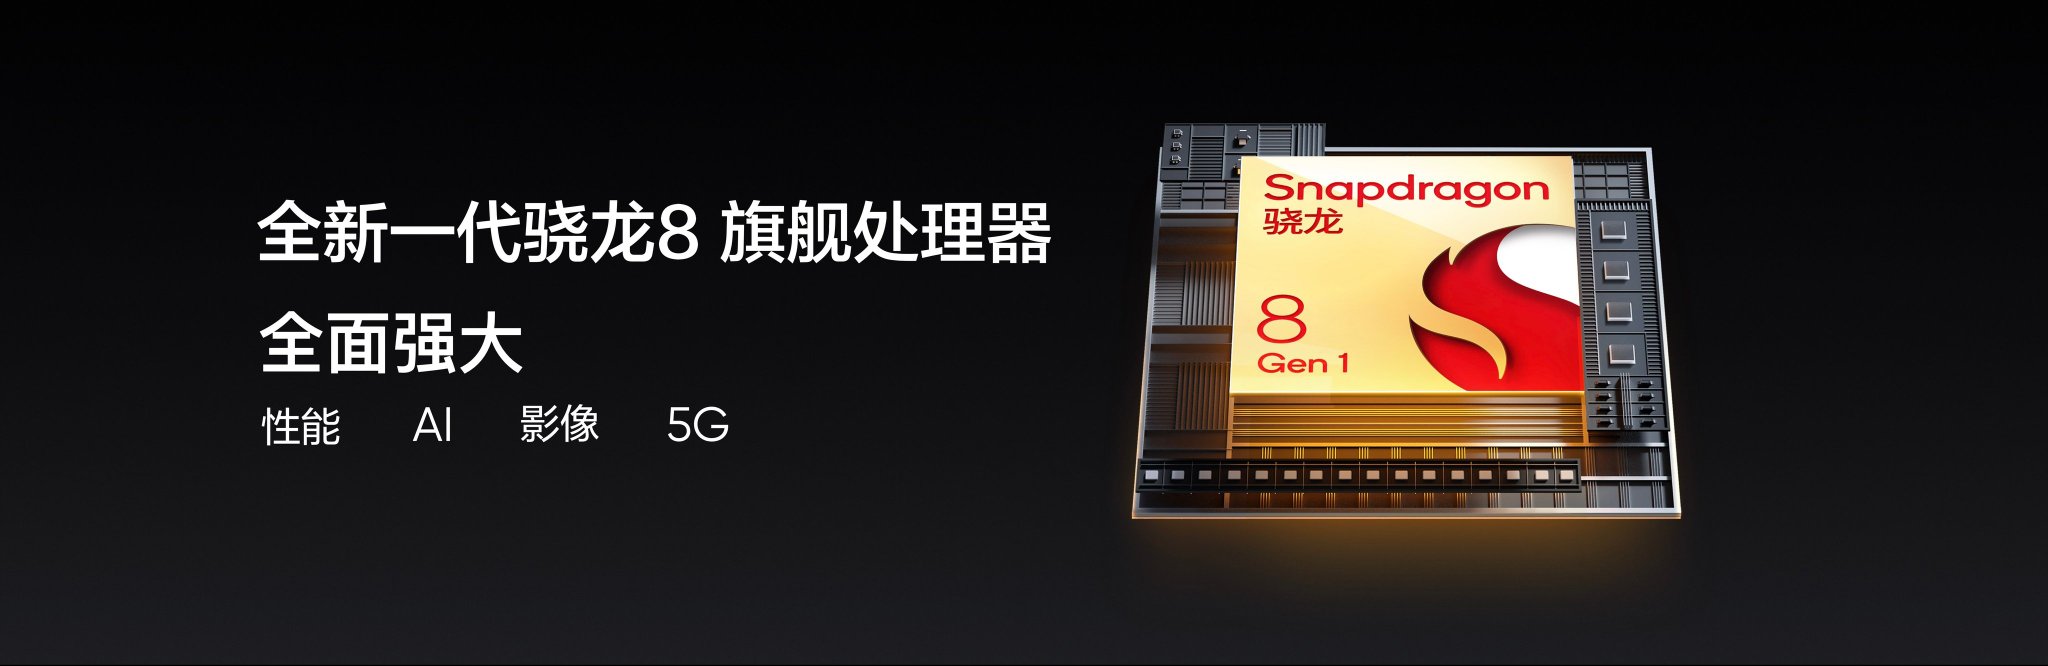 Телефоны с процессором snapdragon 8 gen. IPS 120 Герц Snapdragon. Qualcomm Snapdragon 8 Gen 2 характеристики.